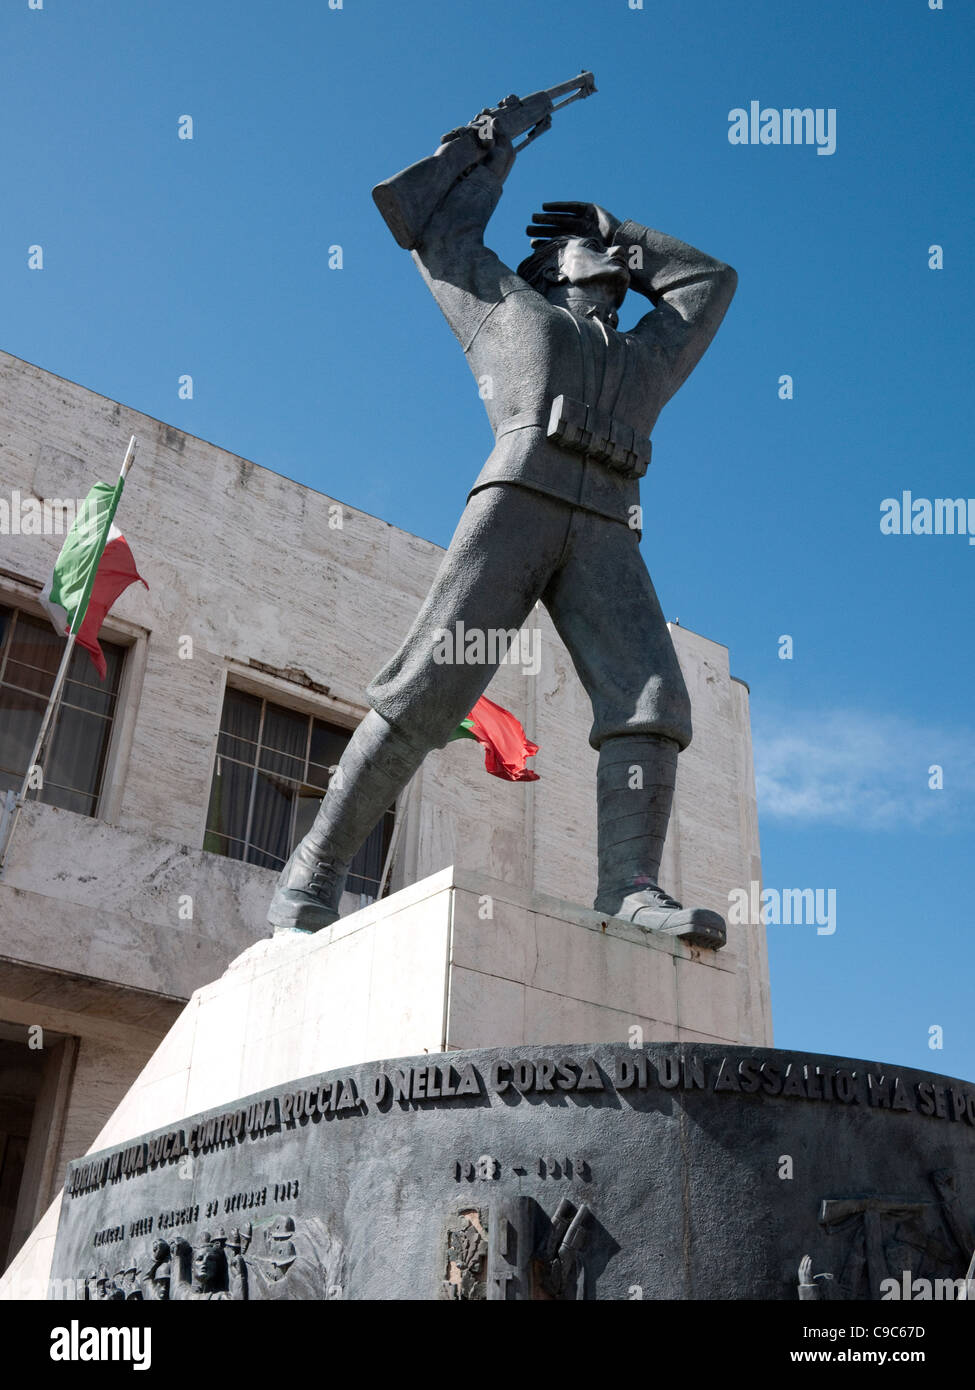 Statue of Filippo Corridoni in memorial Corridonia Marche Italy Sept 2011 Stock Photo